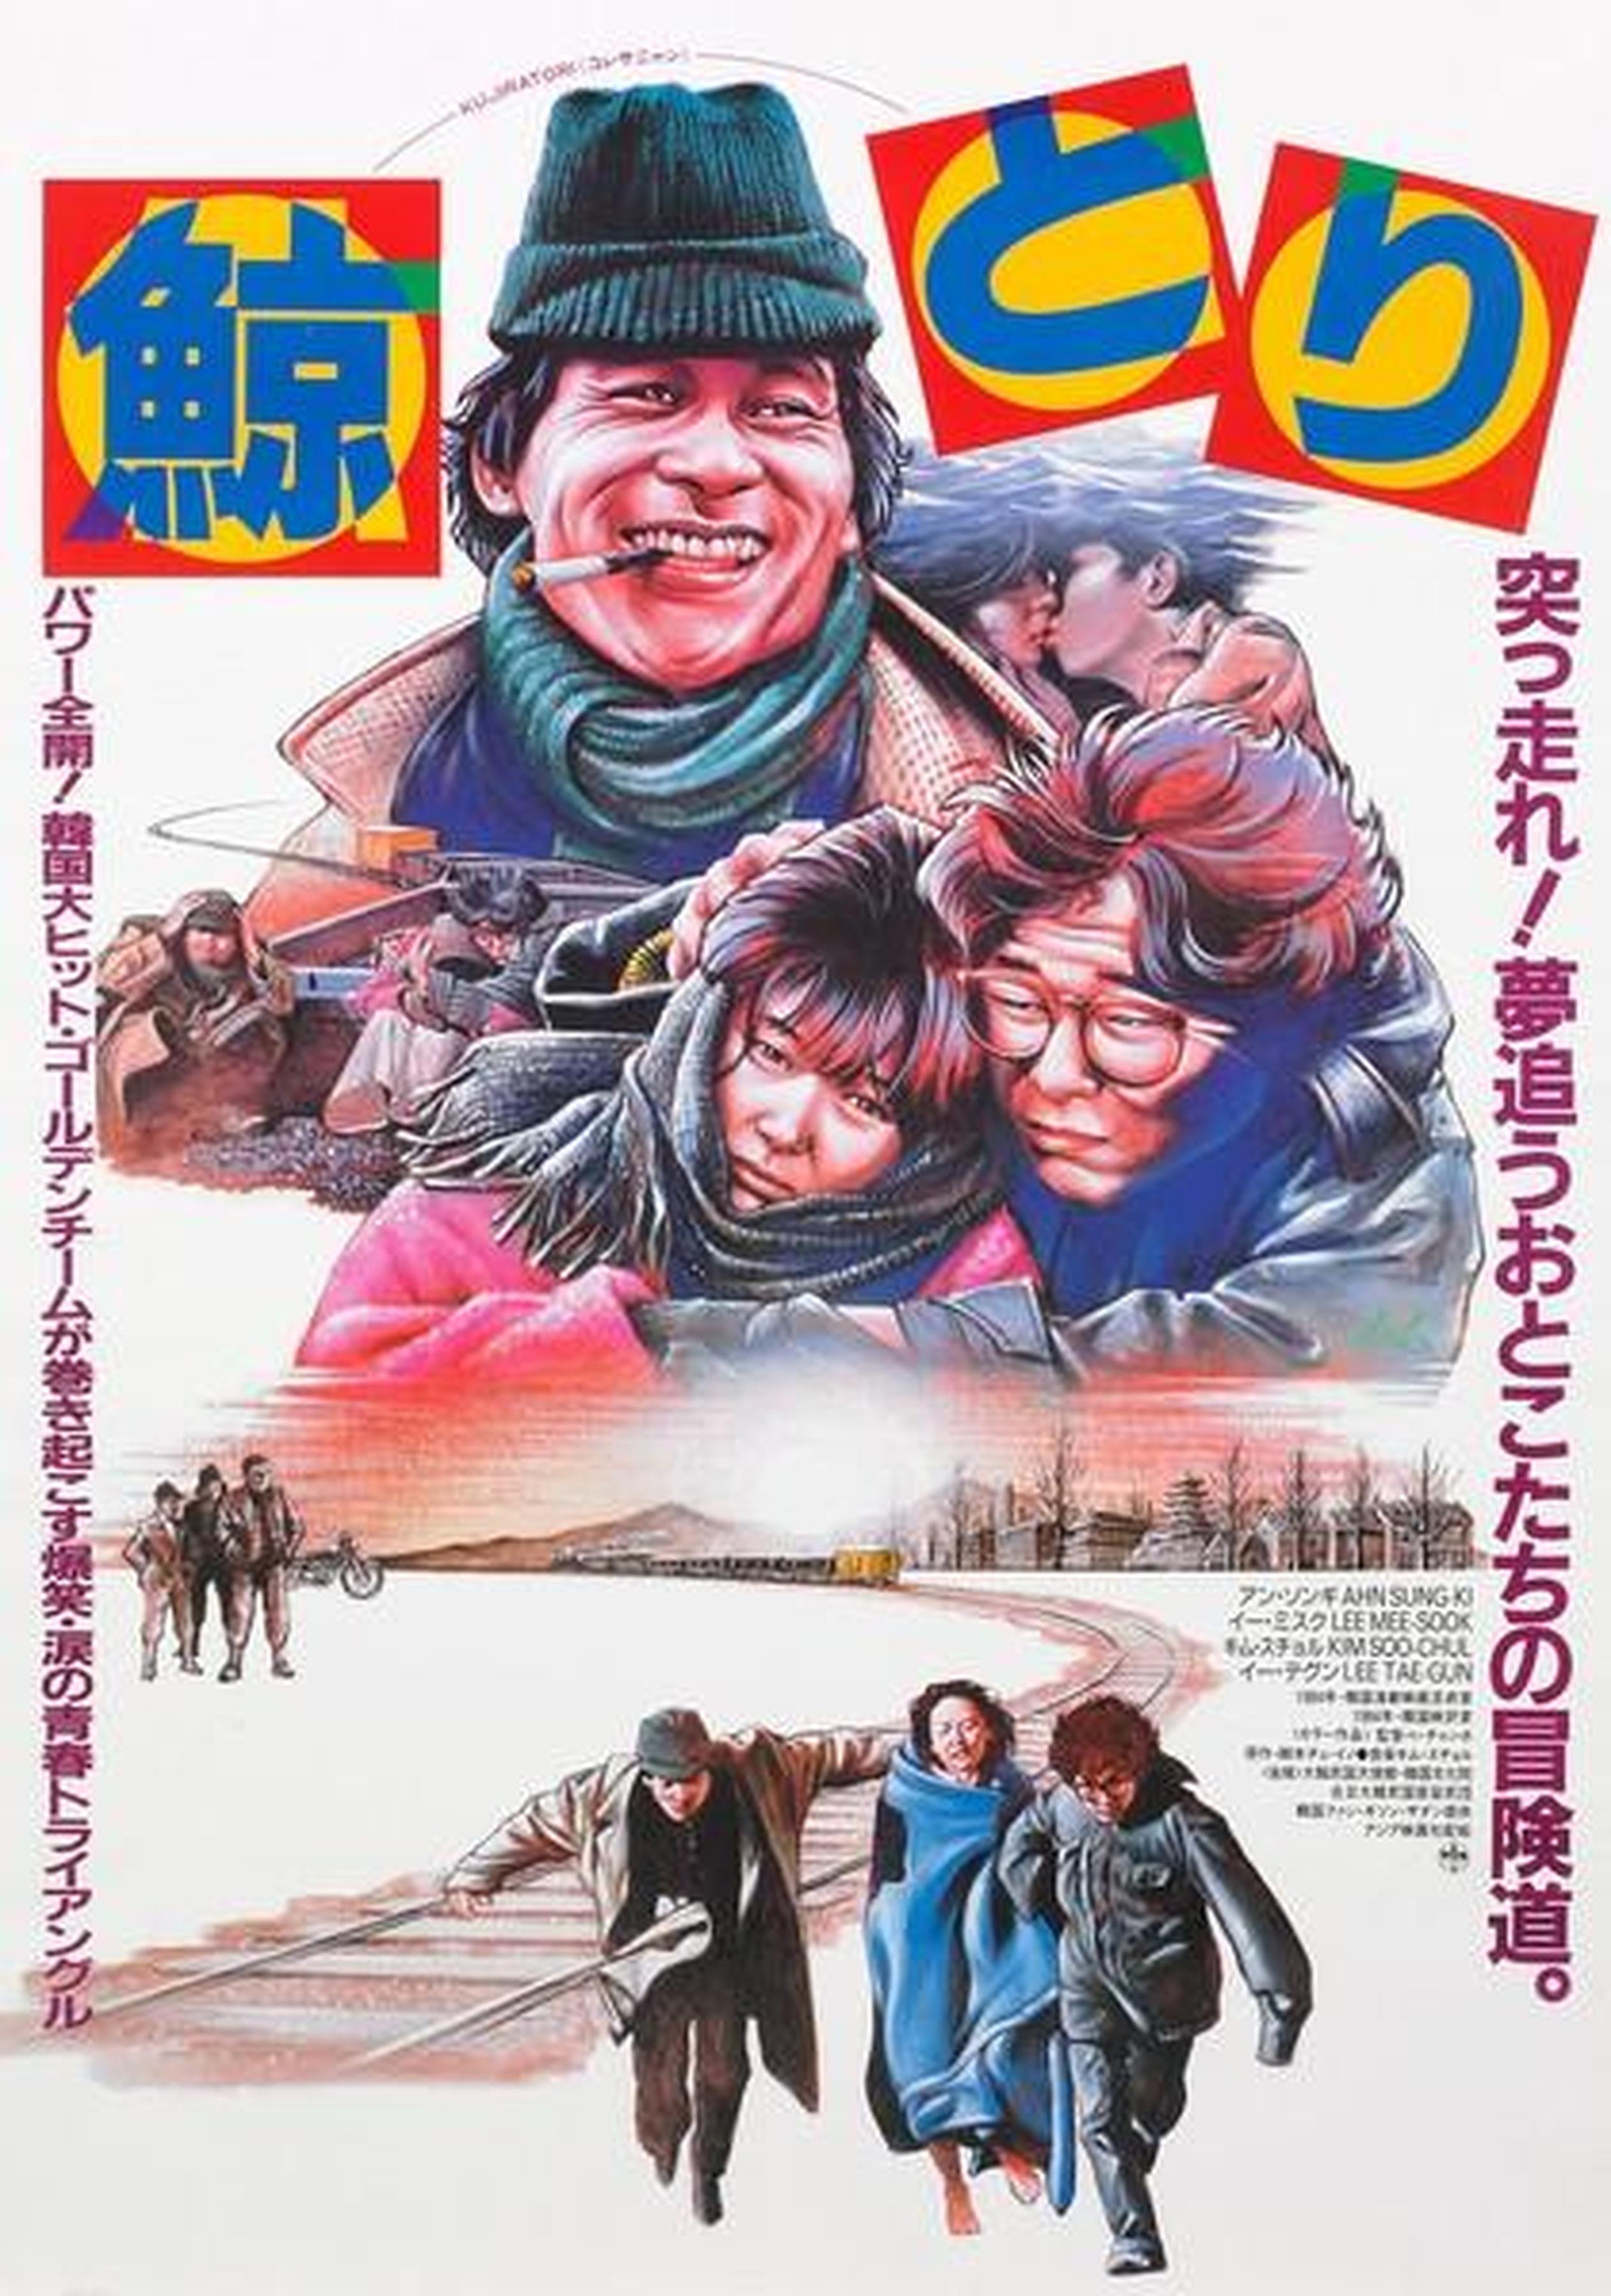 【1980_1990】《捕鲸猎人》(1984)导演裴昶浩